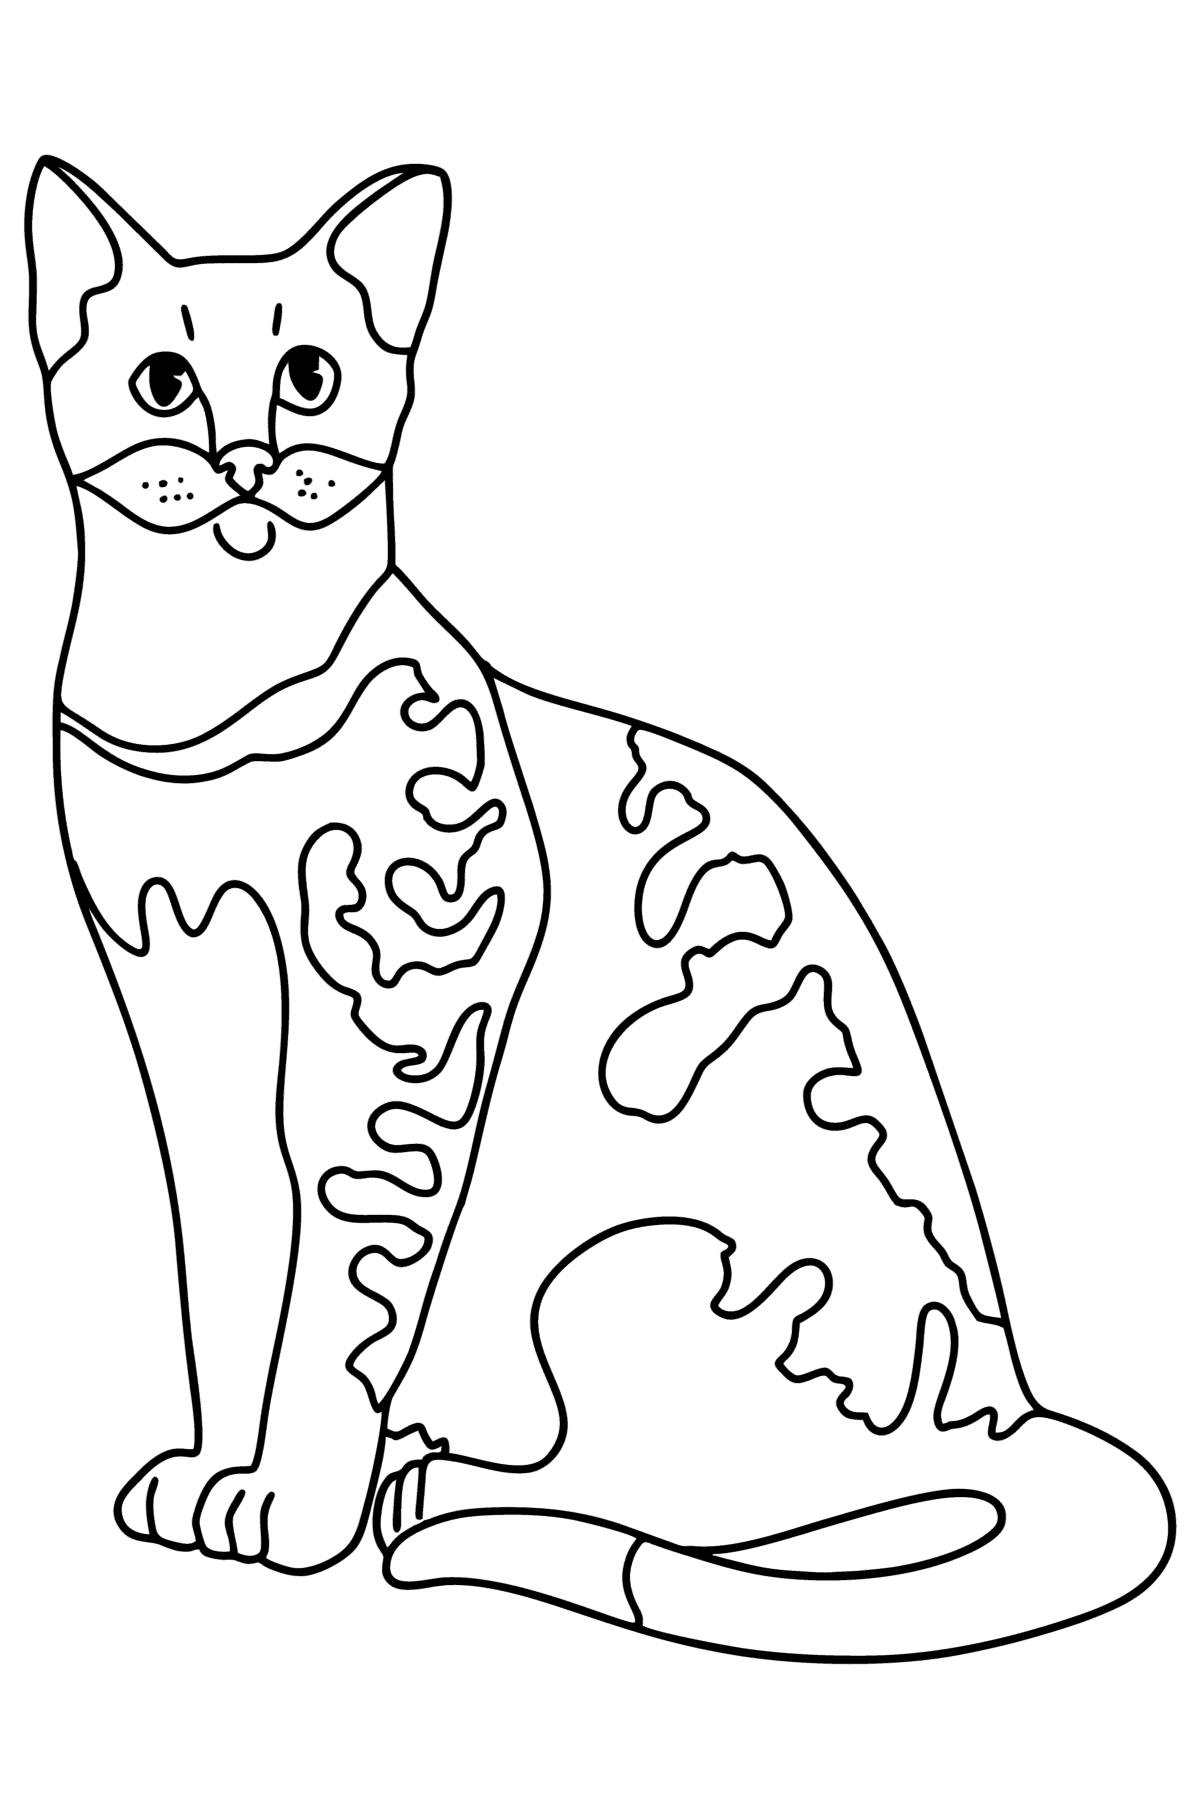 Kleurplaat Egyptische Mau cat - kleurplaten voor kinderen